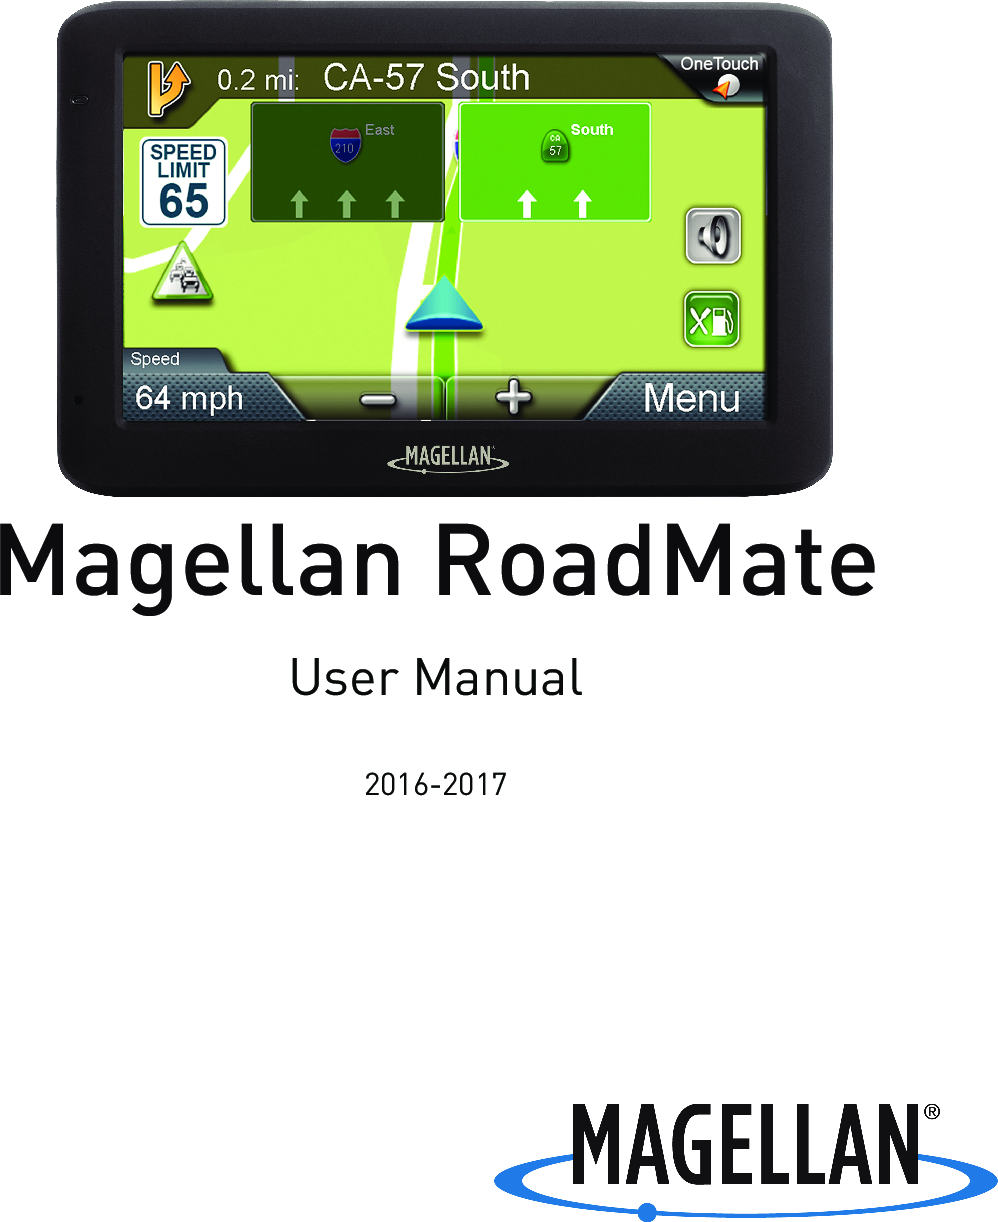 magellan roadmate manual user guide